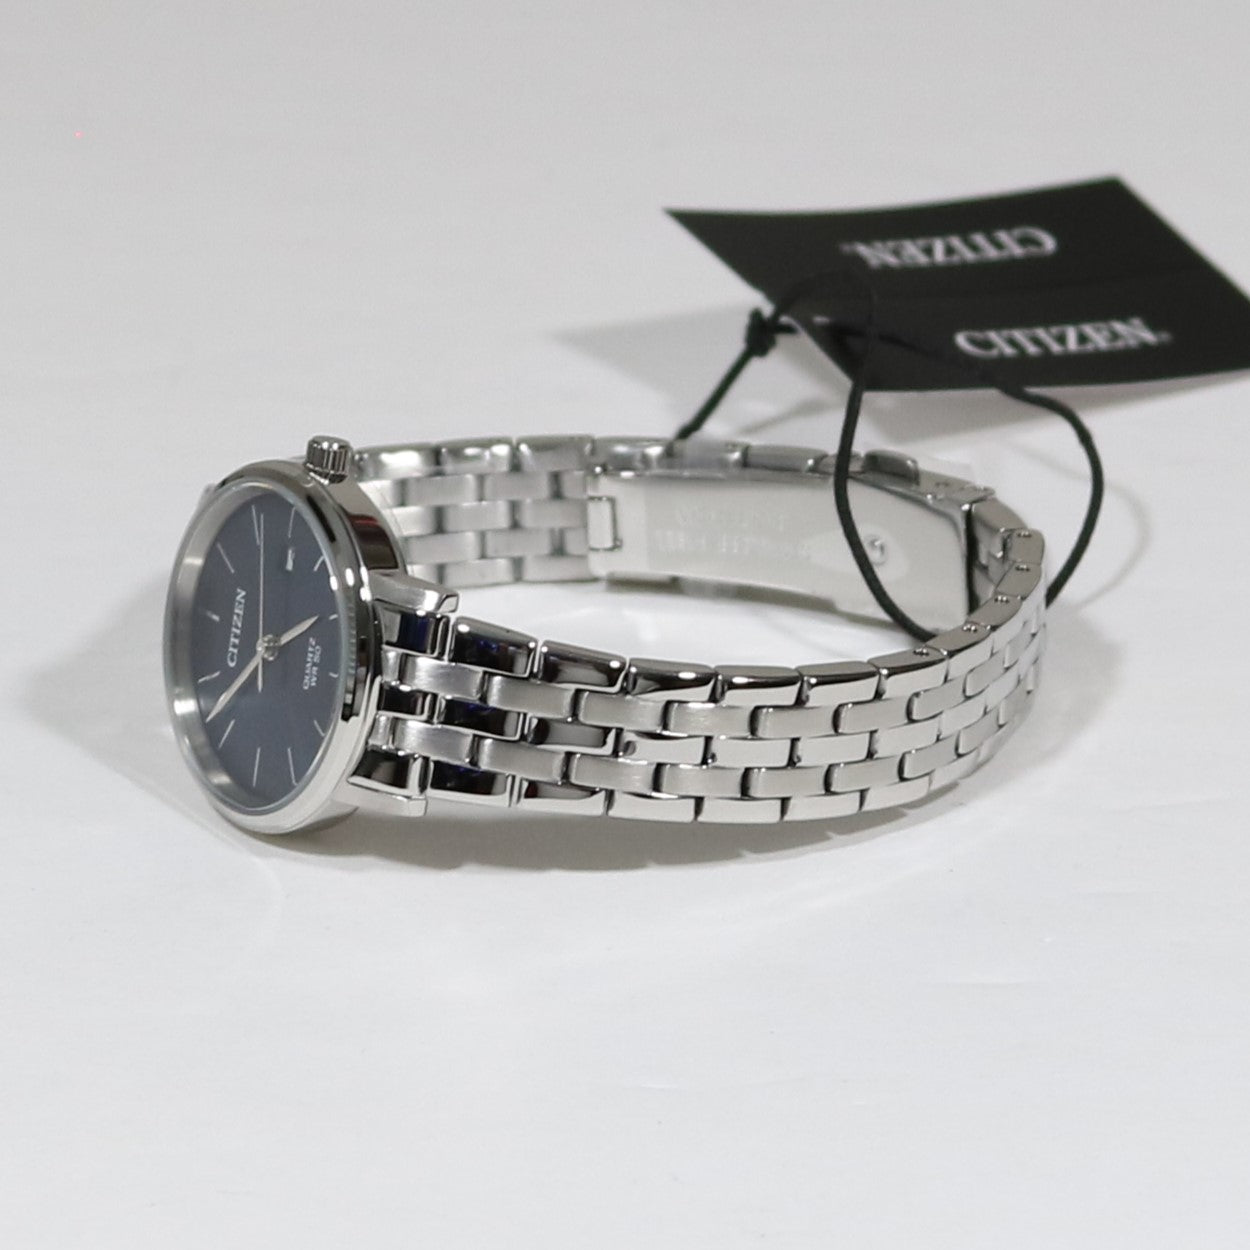 Citizen Quartz Women's Dress Blue Dial Stainless Steel Watch EU6090-54 –  Chronobuy